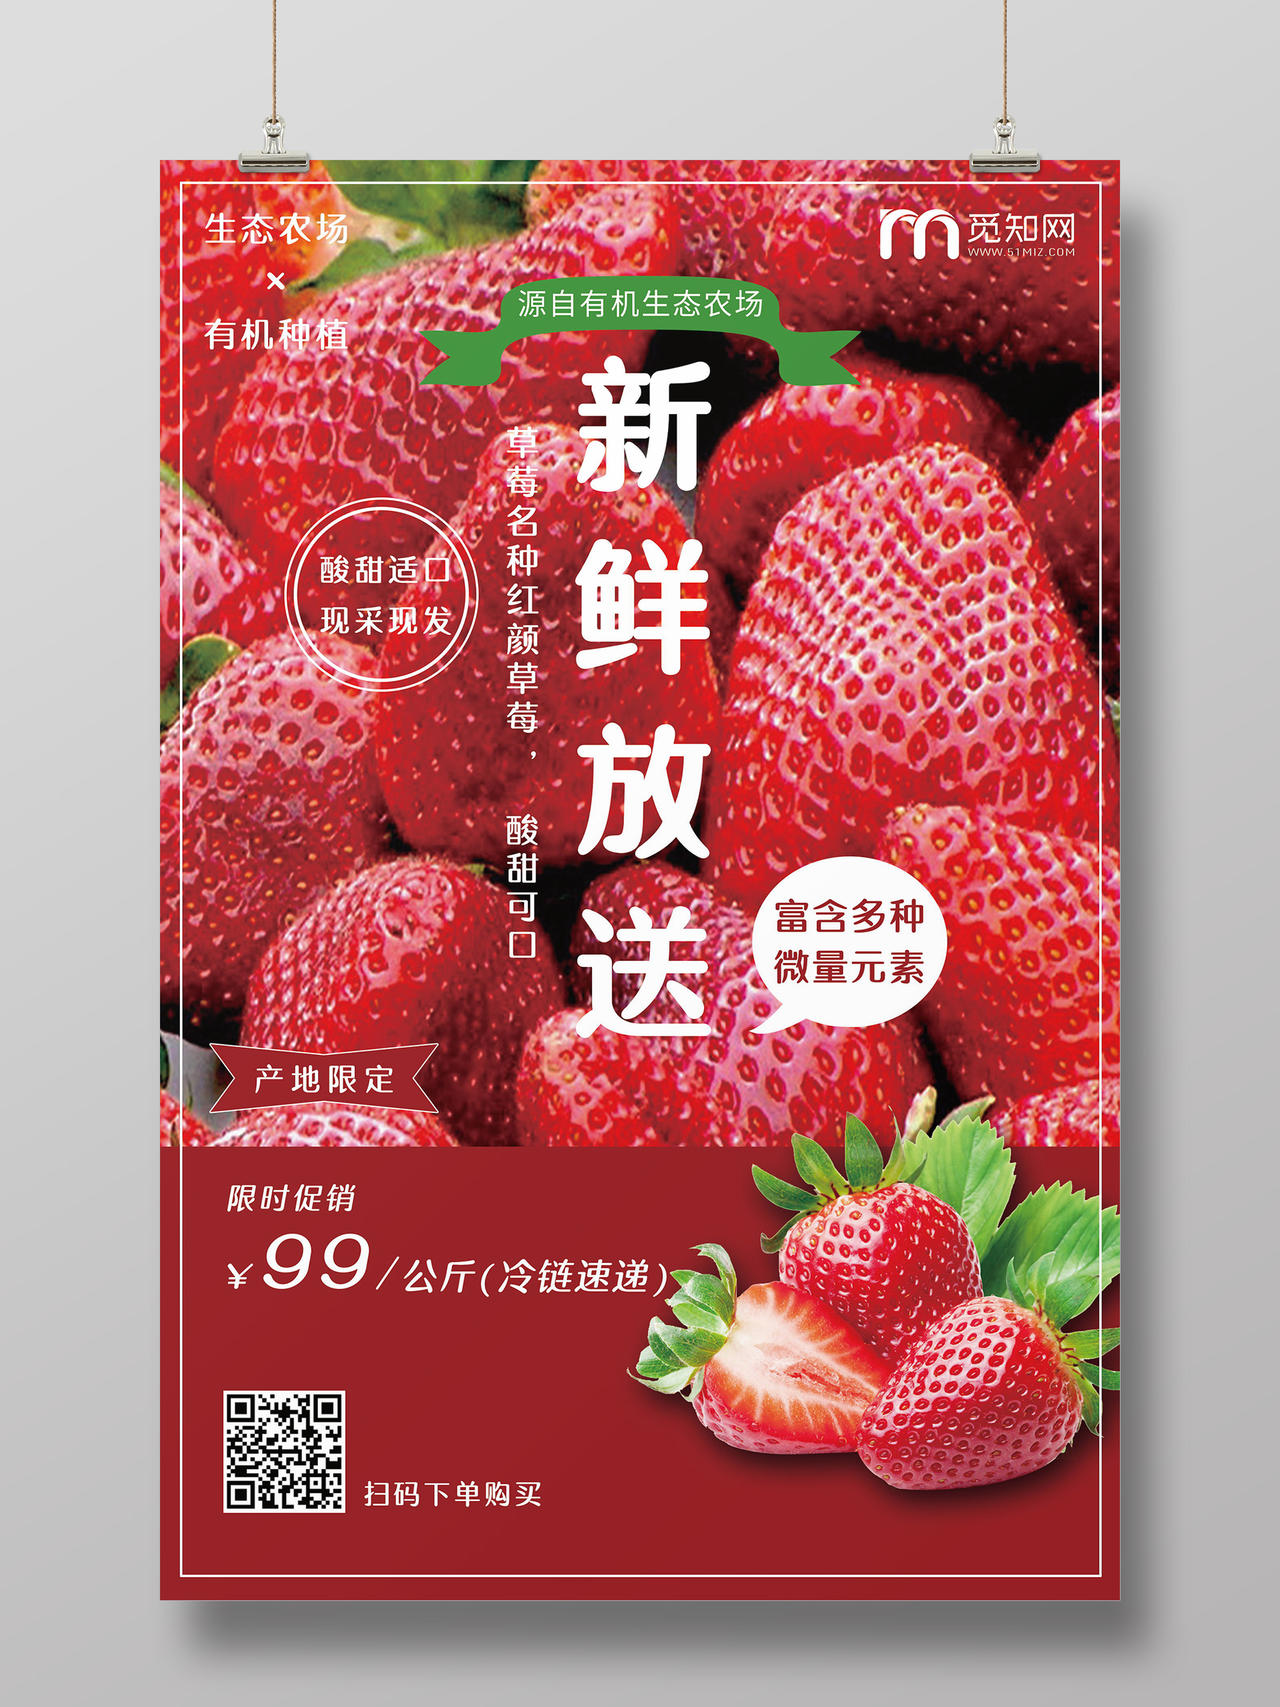 新鲜放送草莓采摘海报设计模板生鲜水果草莓